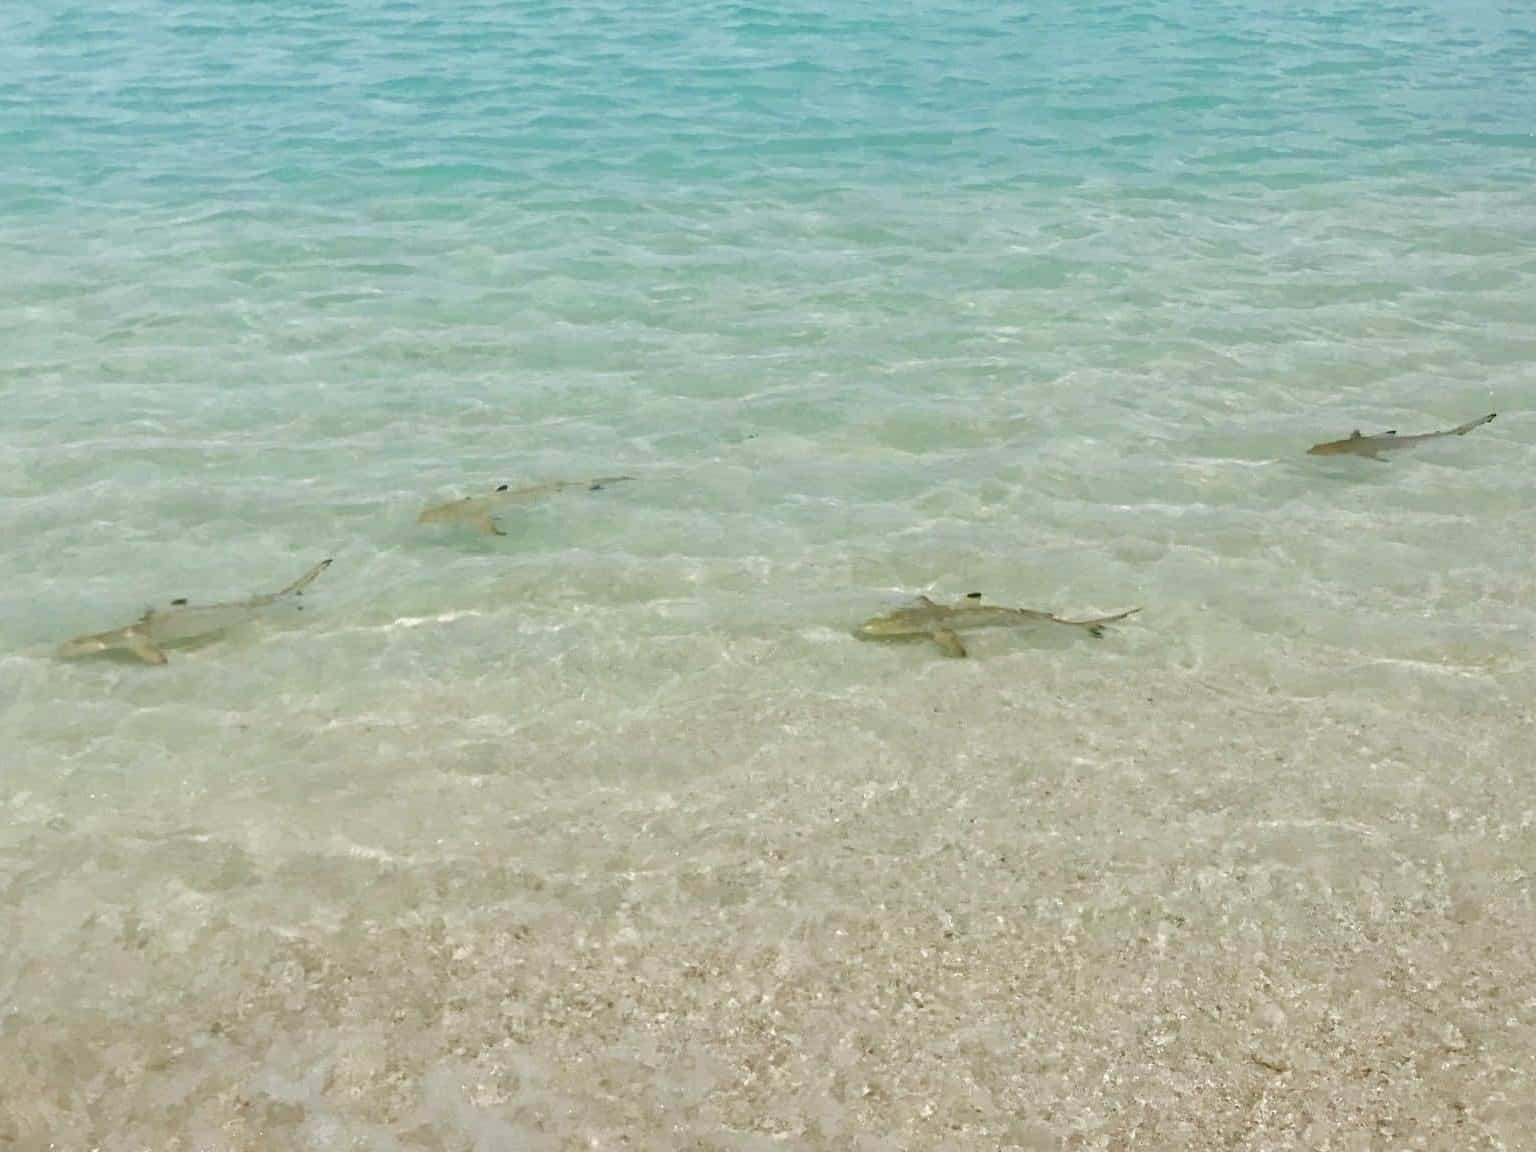 Hai-Arten auf den Malediven – gefährlich für Urlauber beim Schwimmen?